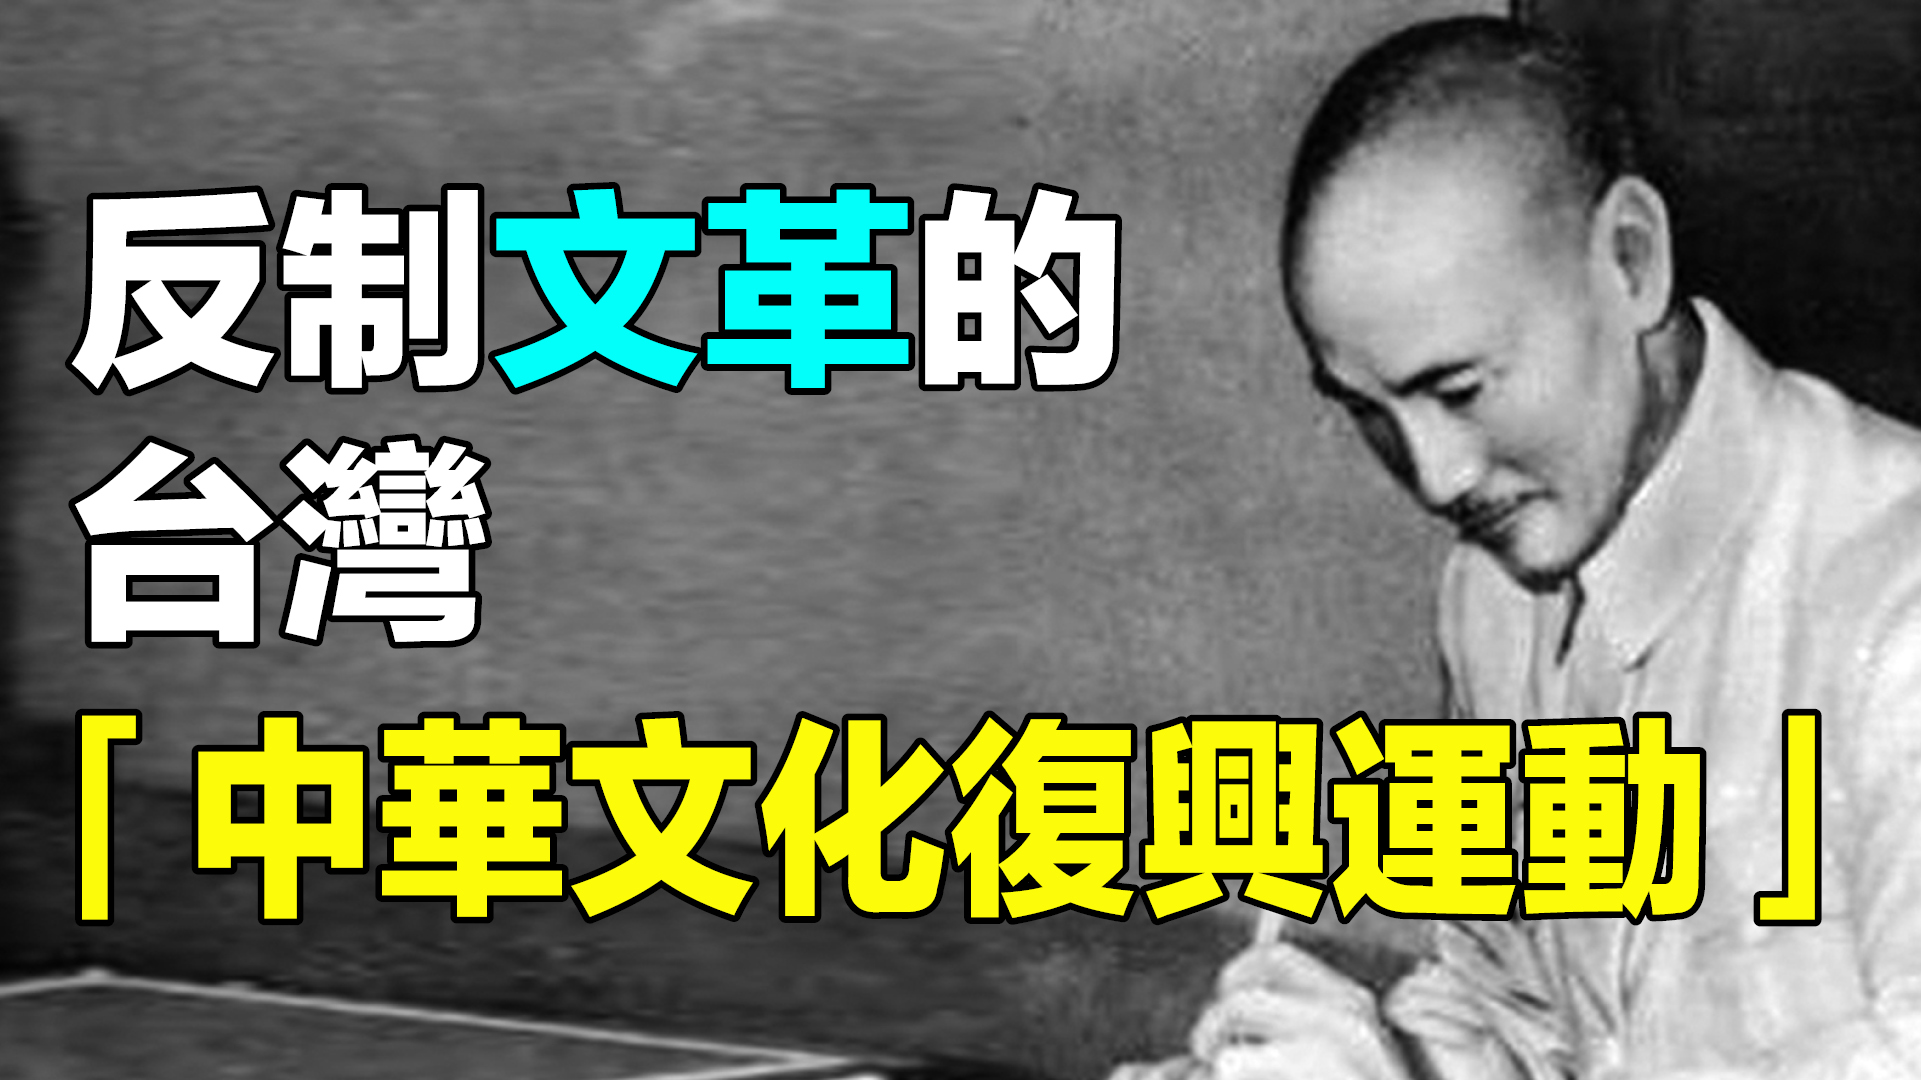  1966年，大陸文革爆發後，#蔣介石 在台灣，發起了一場「中華文化復興運動」，反制文革對中華文化的摧殘。|#故事傳奇